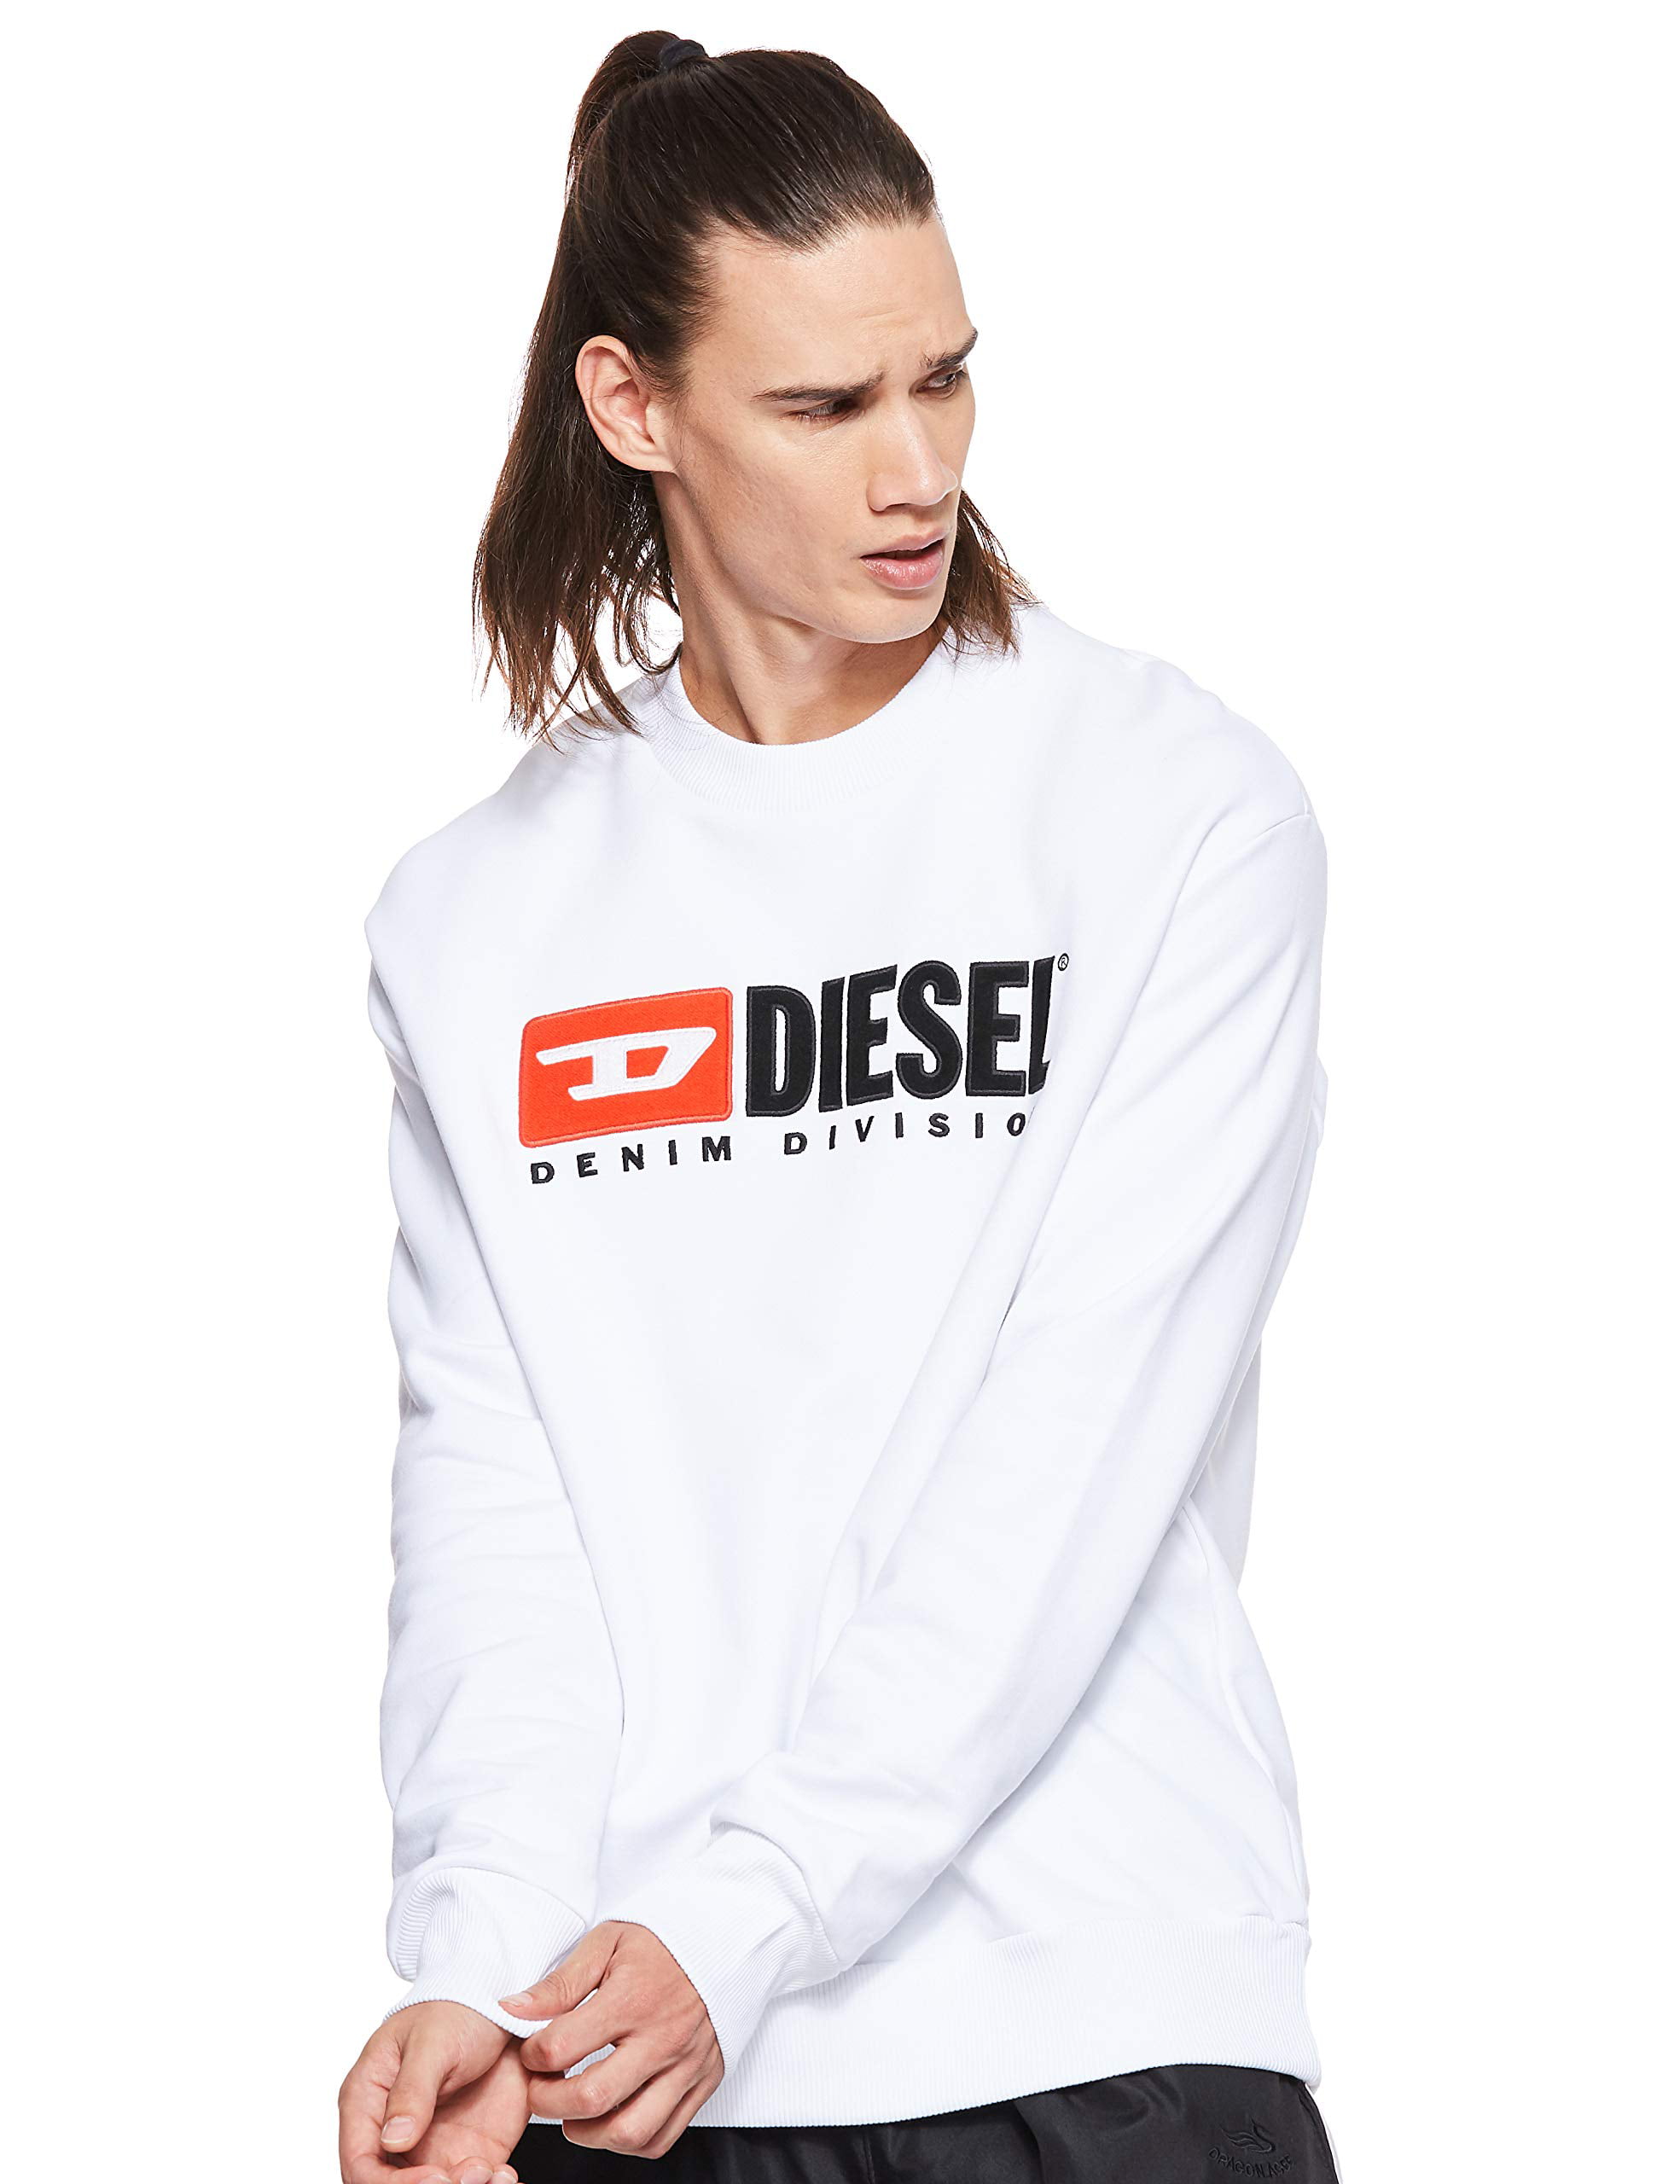 Diesel Men's S-Crew Denim Division Division Sweat Shirt (Medium